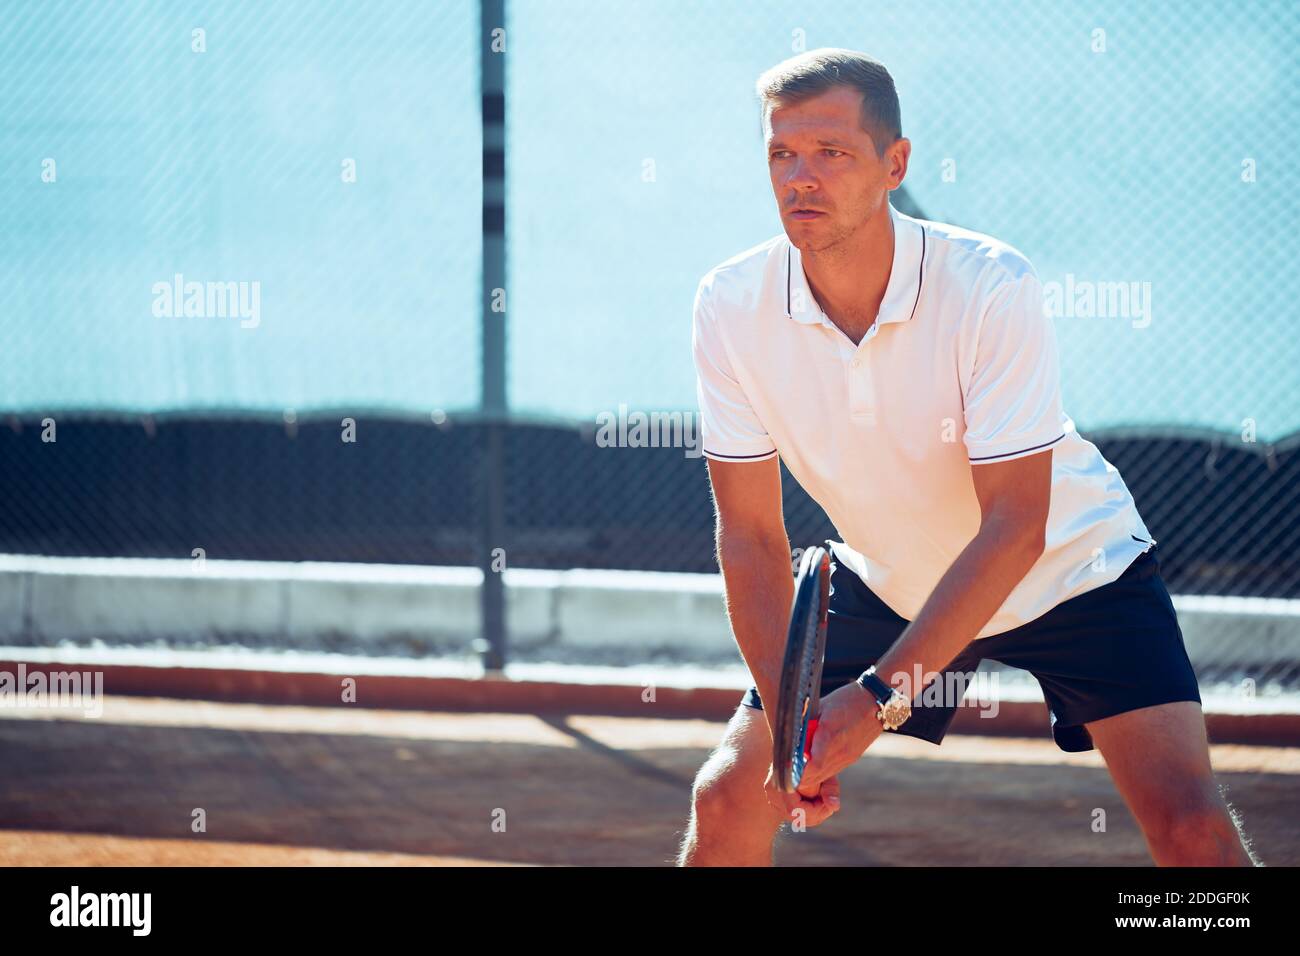 Joueur de tennis debout sur le court de tennis Banque D'Images